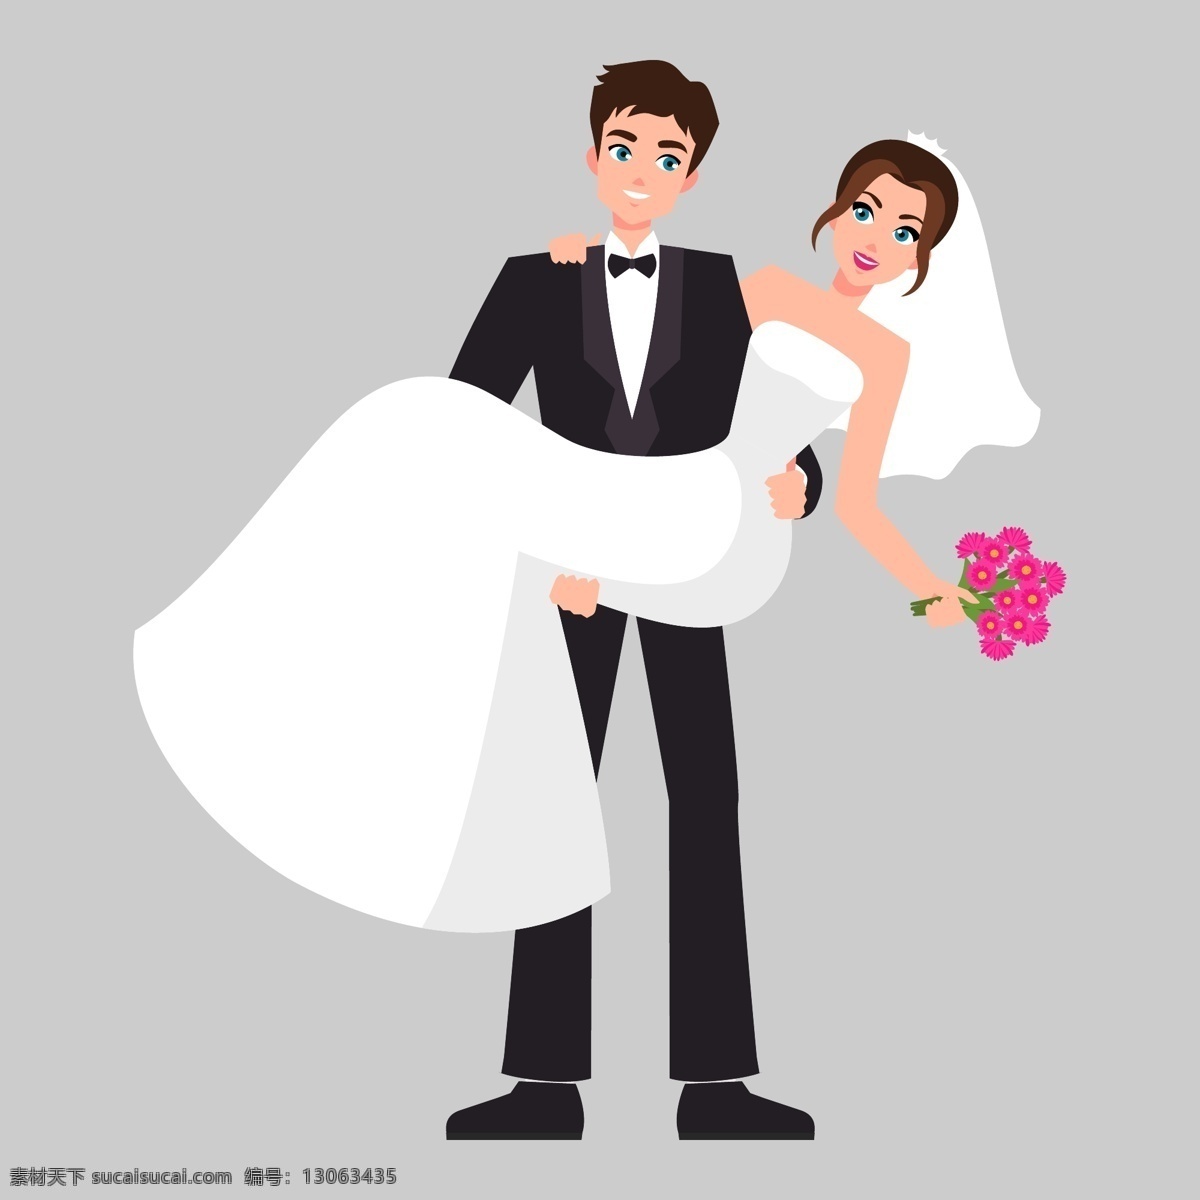 新郎新娘 情侣 夫妻 婚礼 情人节 结婚纪念日 新婚 蜜月 卡通素材 矢量图素材 ai素材